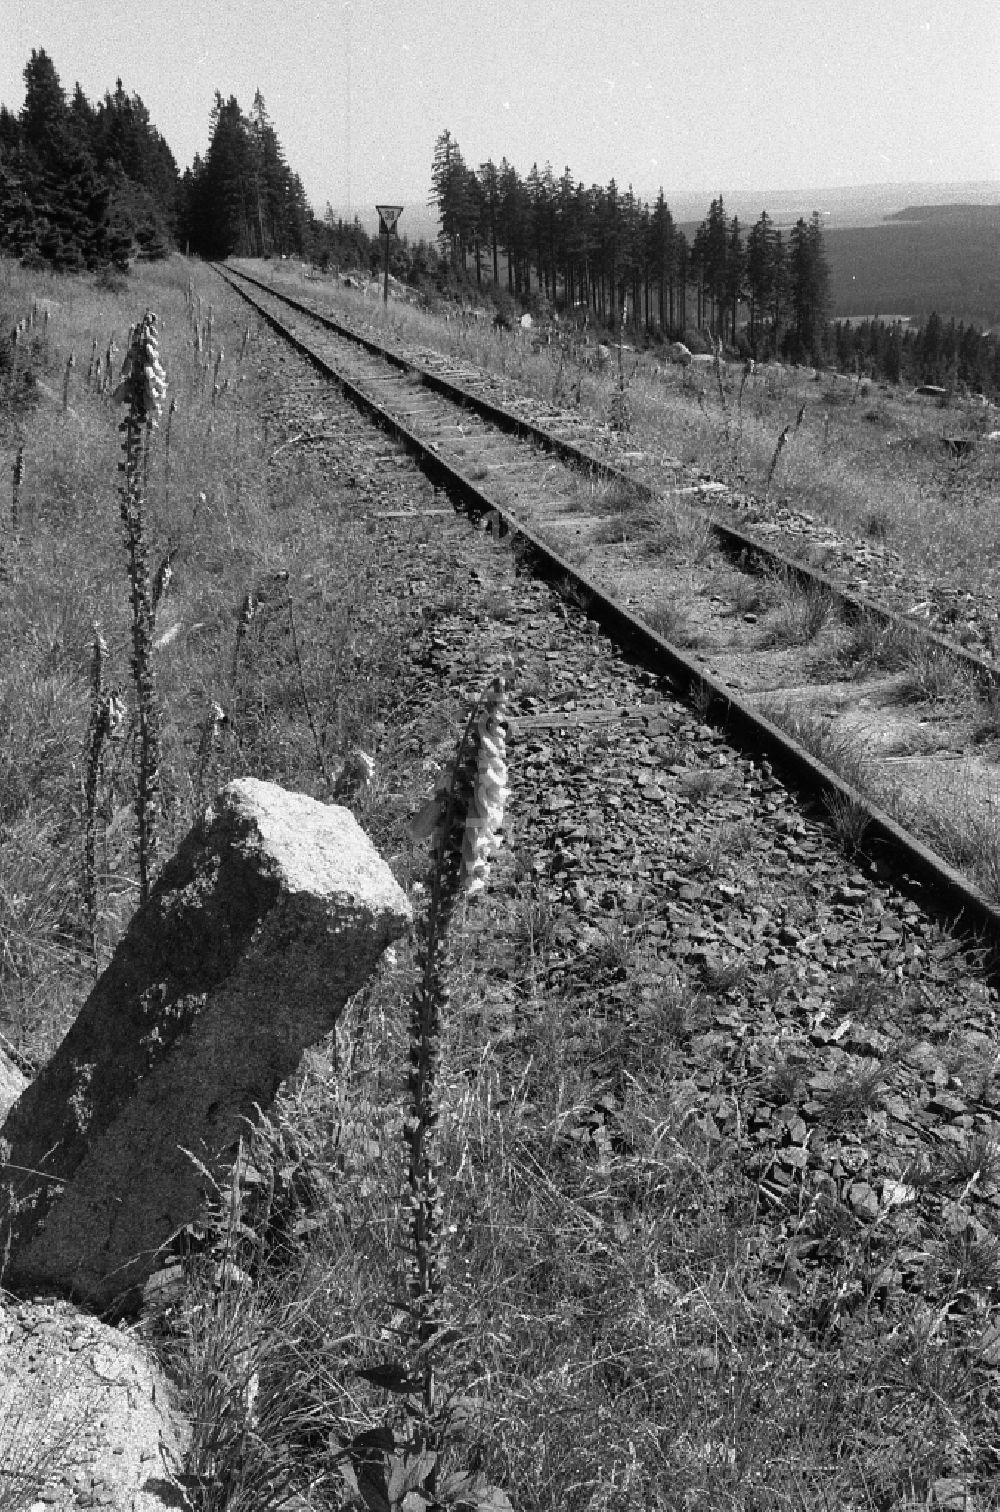 DDR-Bildarchiv: Schierke - Gleisanlagen auf dem Gipfel- Plateau des Brocken in Schierke in Sachsen-Anhalt in der DDR